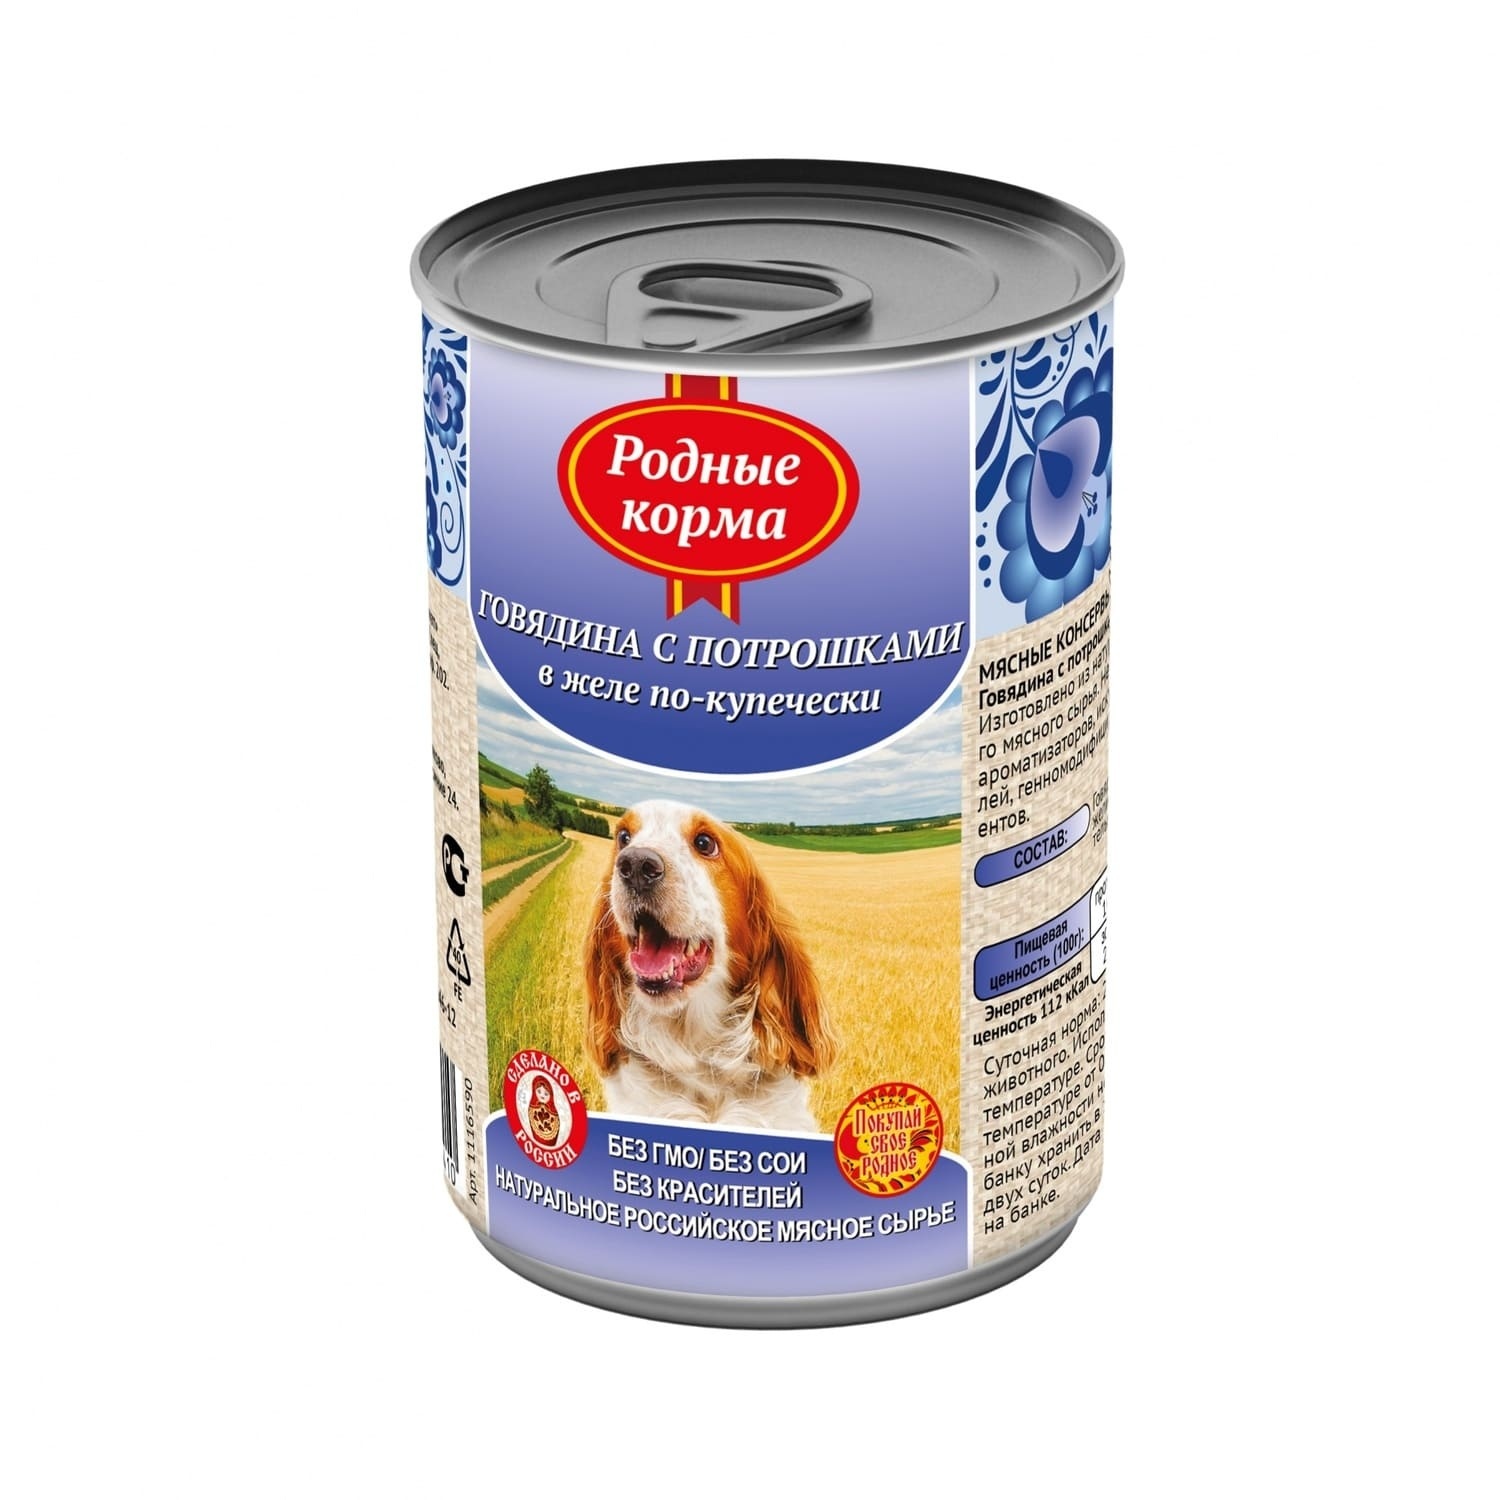 Родные корма Родные корма консервы для собак, говядина с потрошками в желе по-купечески (970 г)